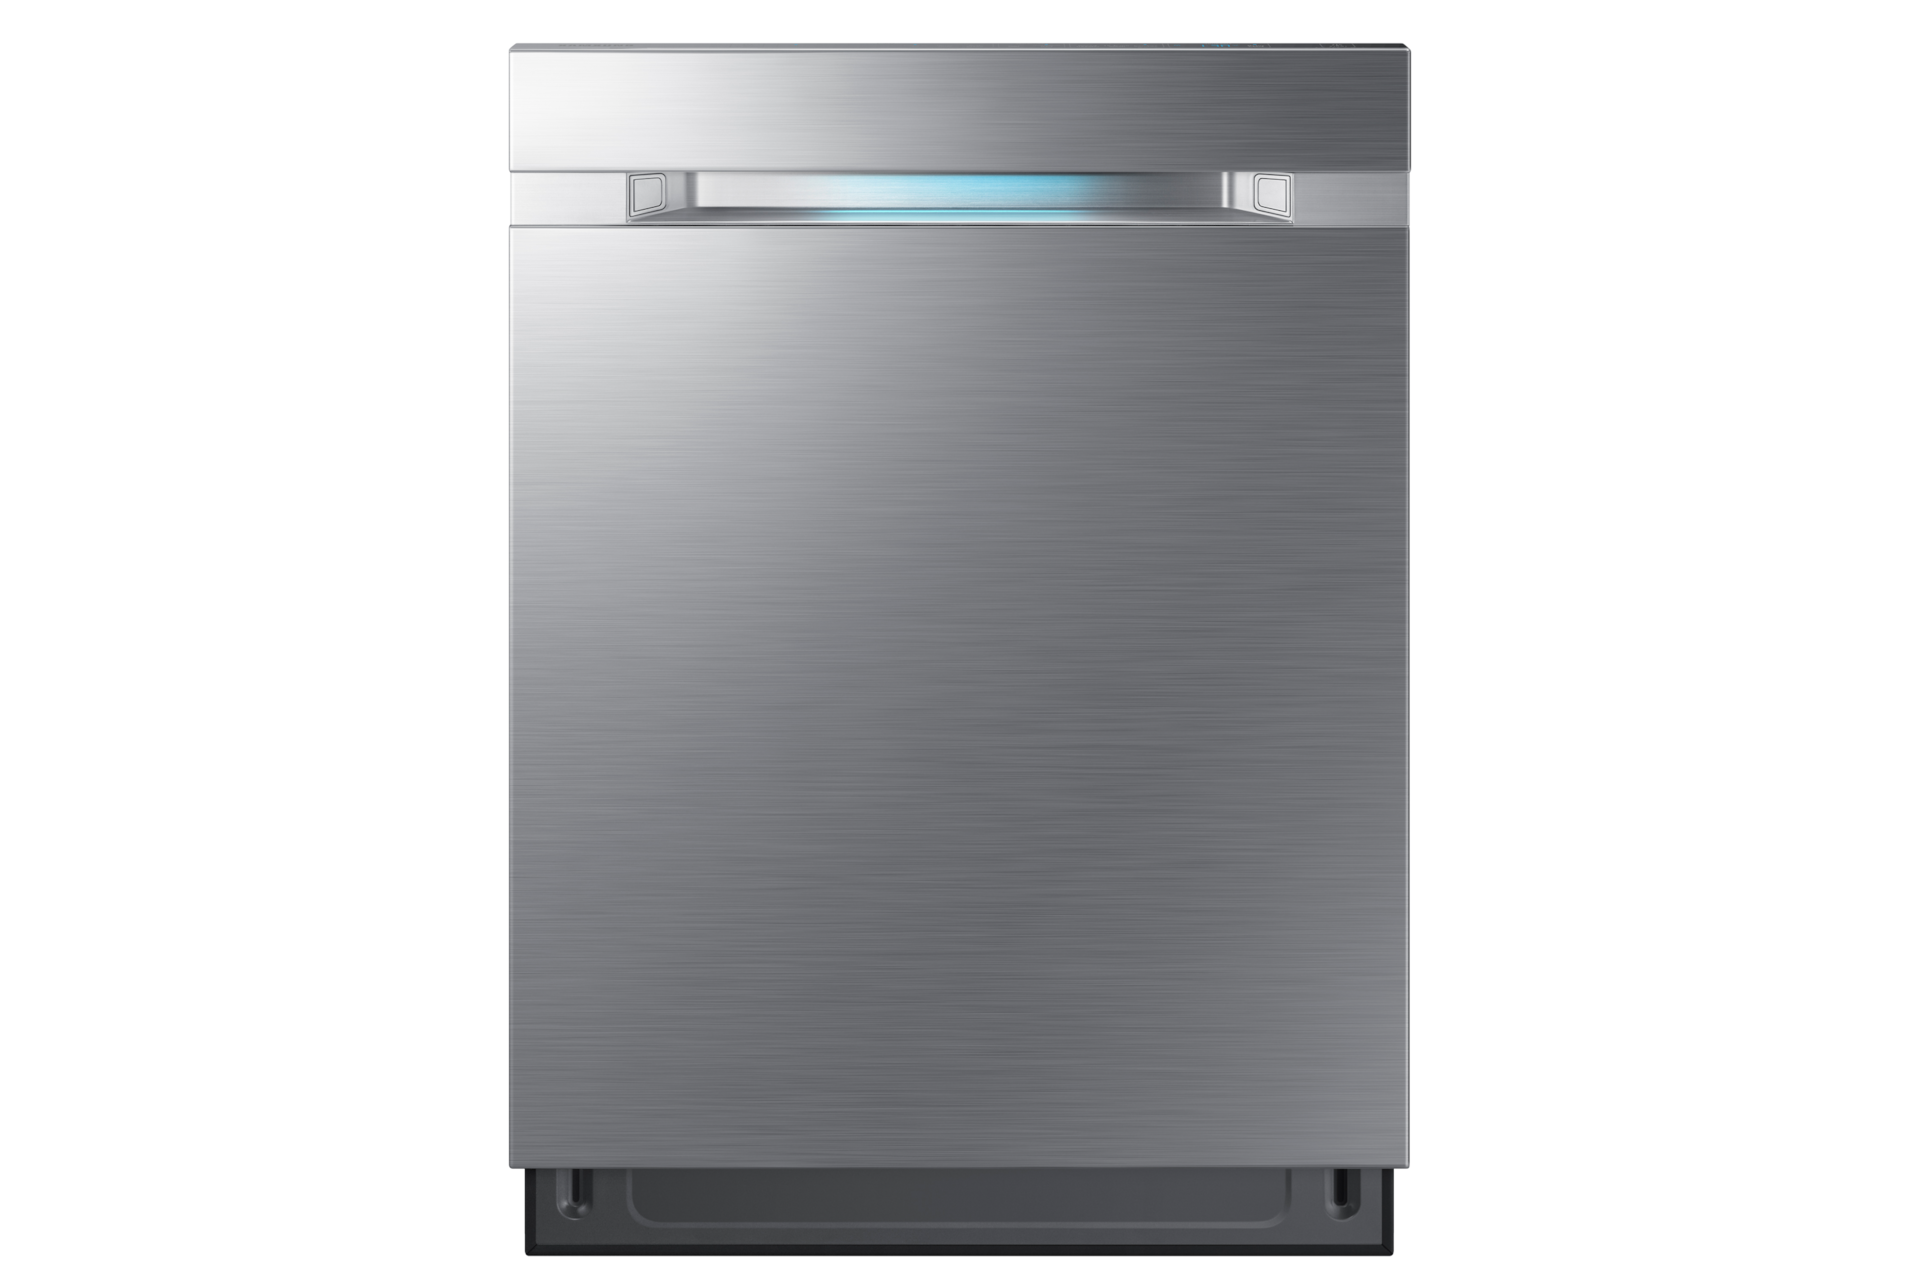 Samsung DW80M9550US Premium Dishwasher 